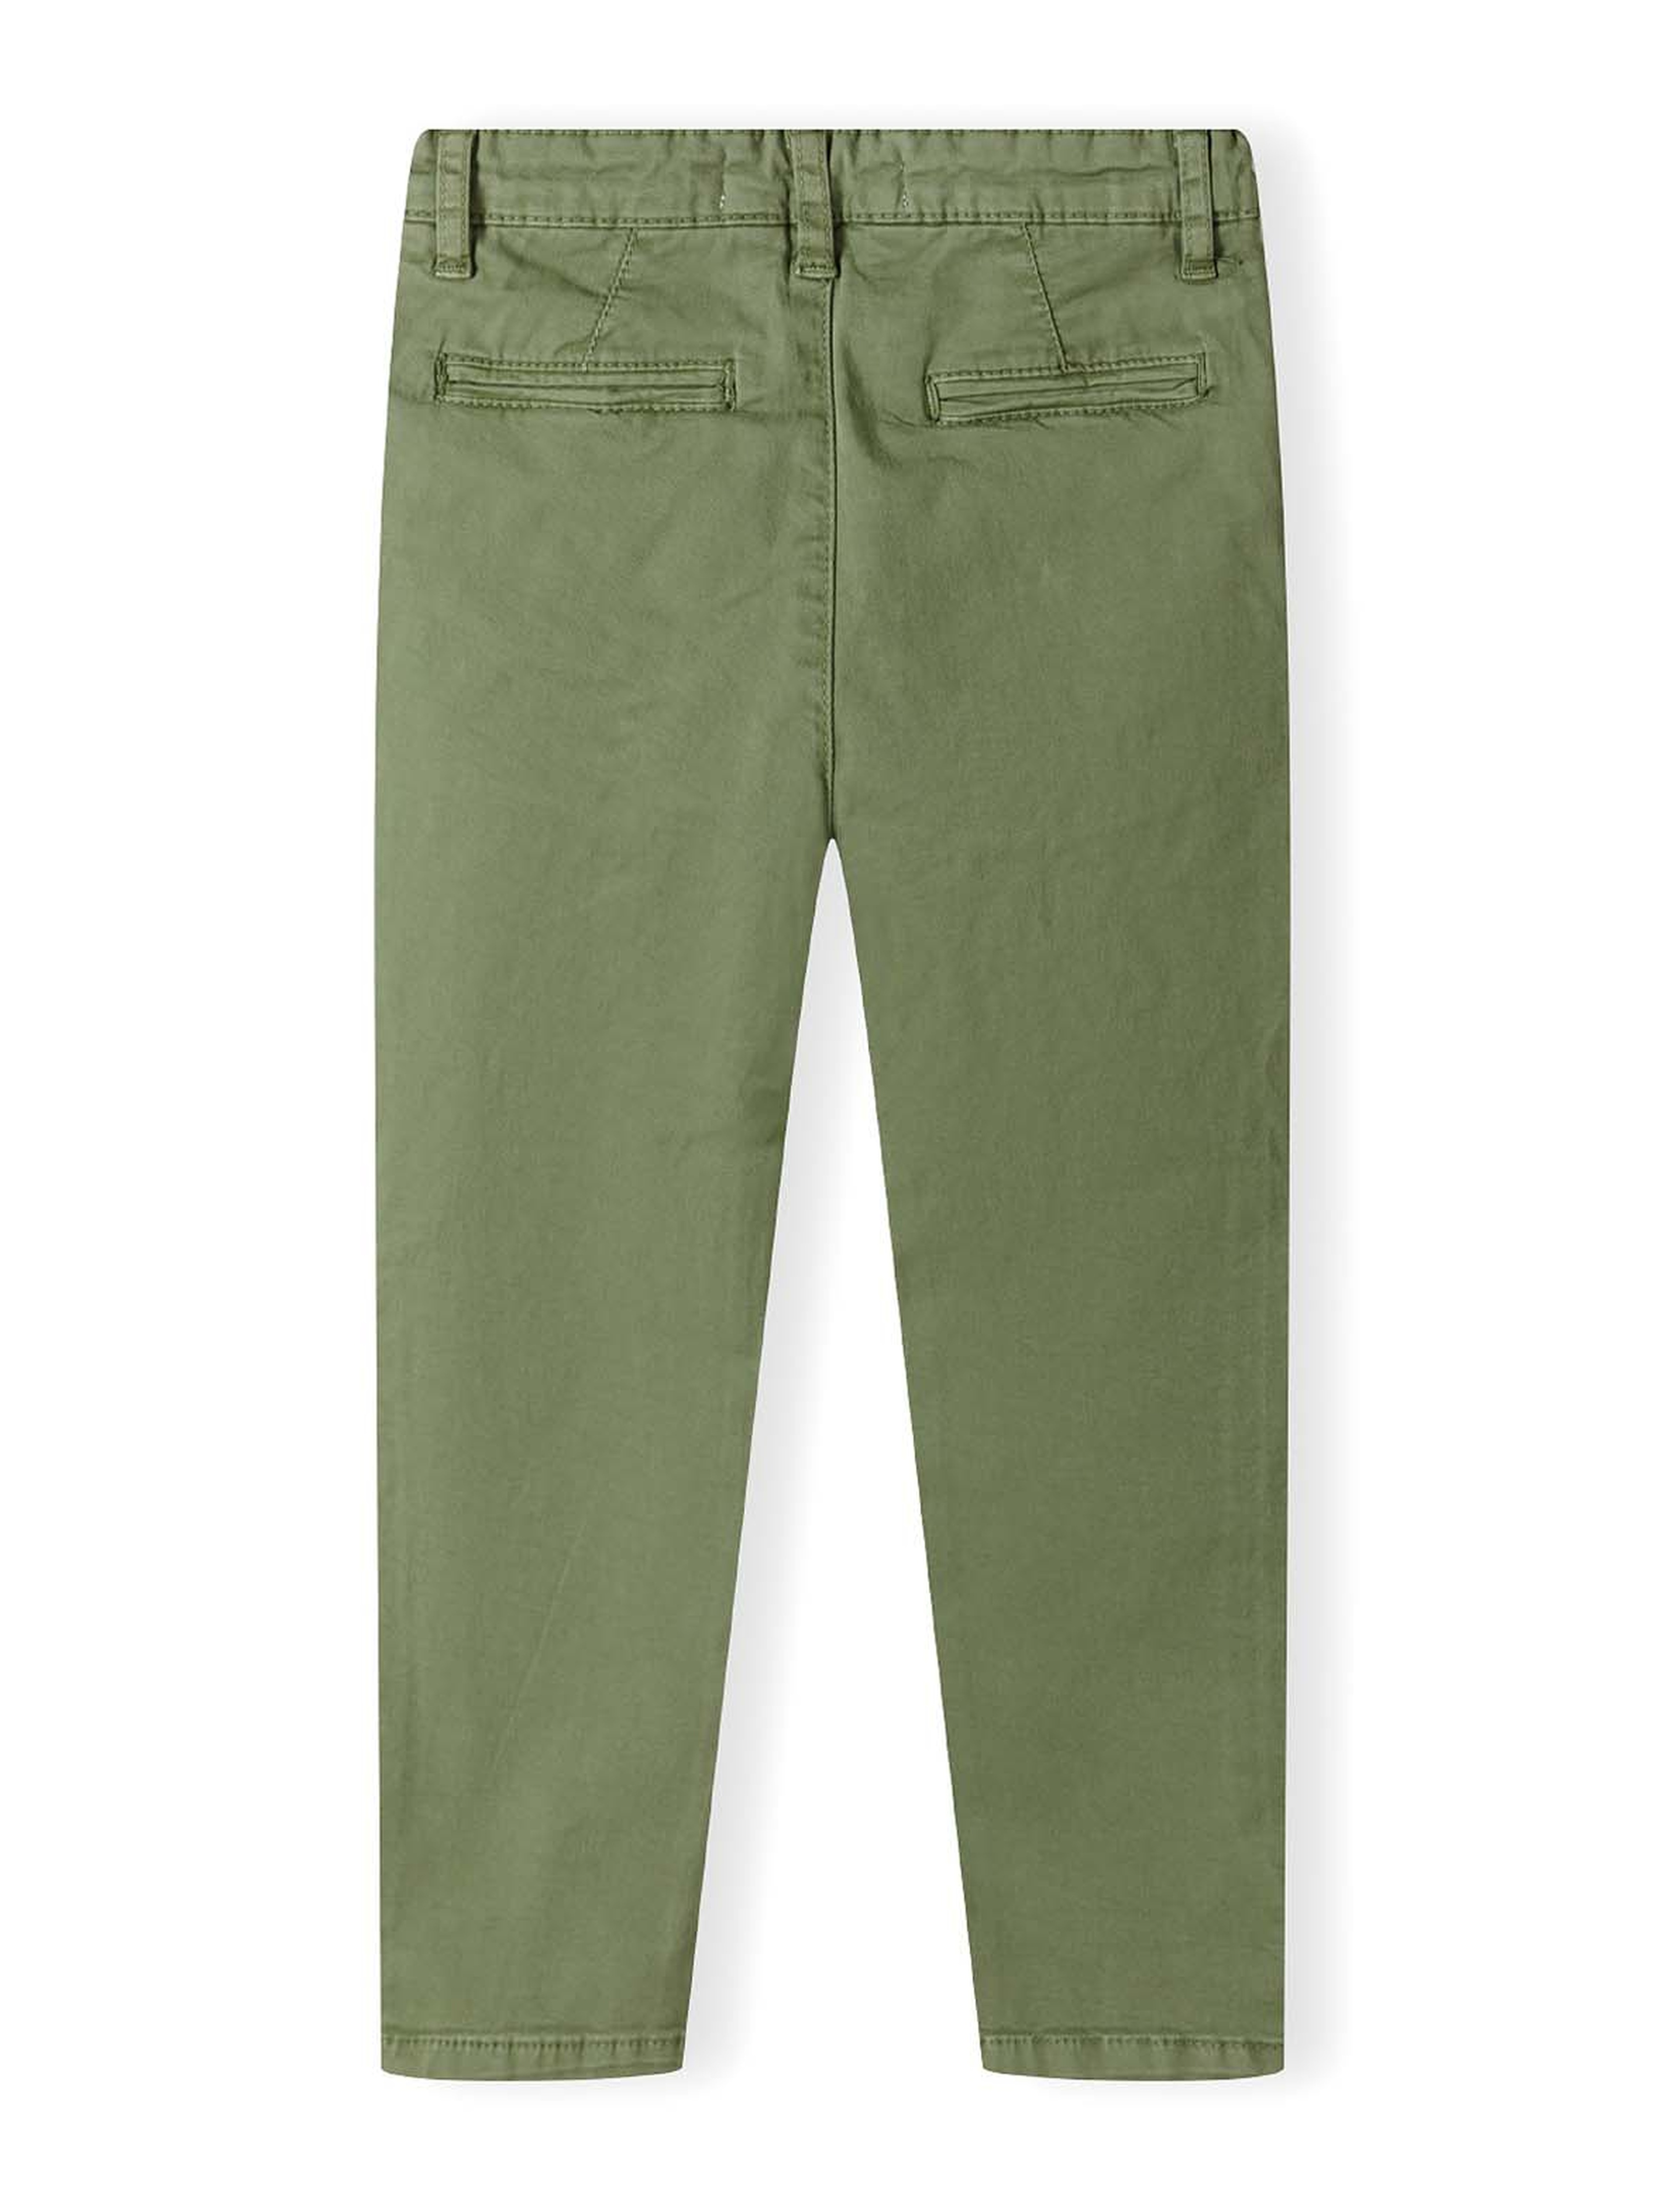 Zielone spodnie typu chino dla chłopca